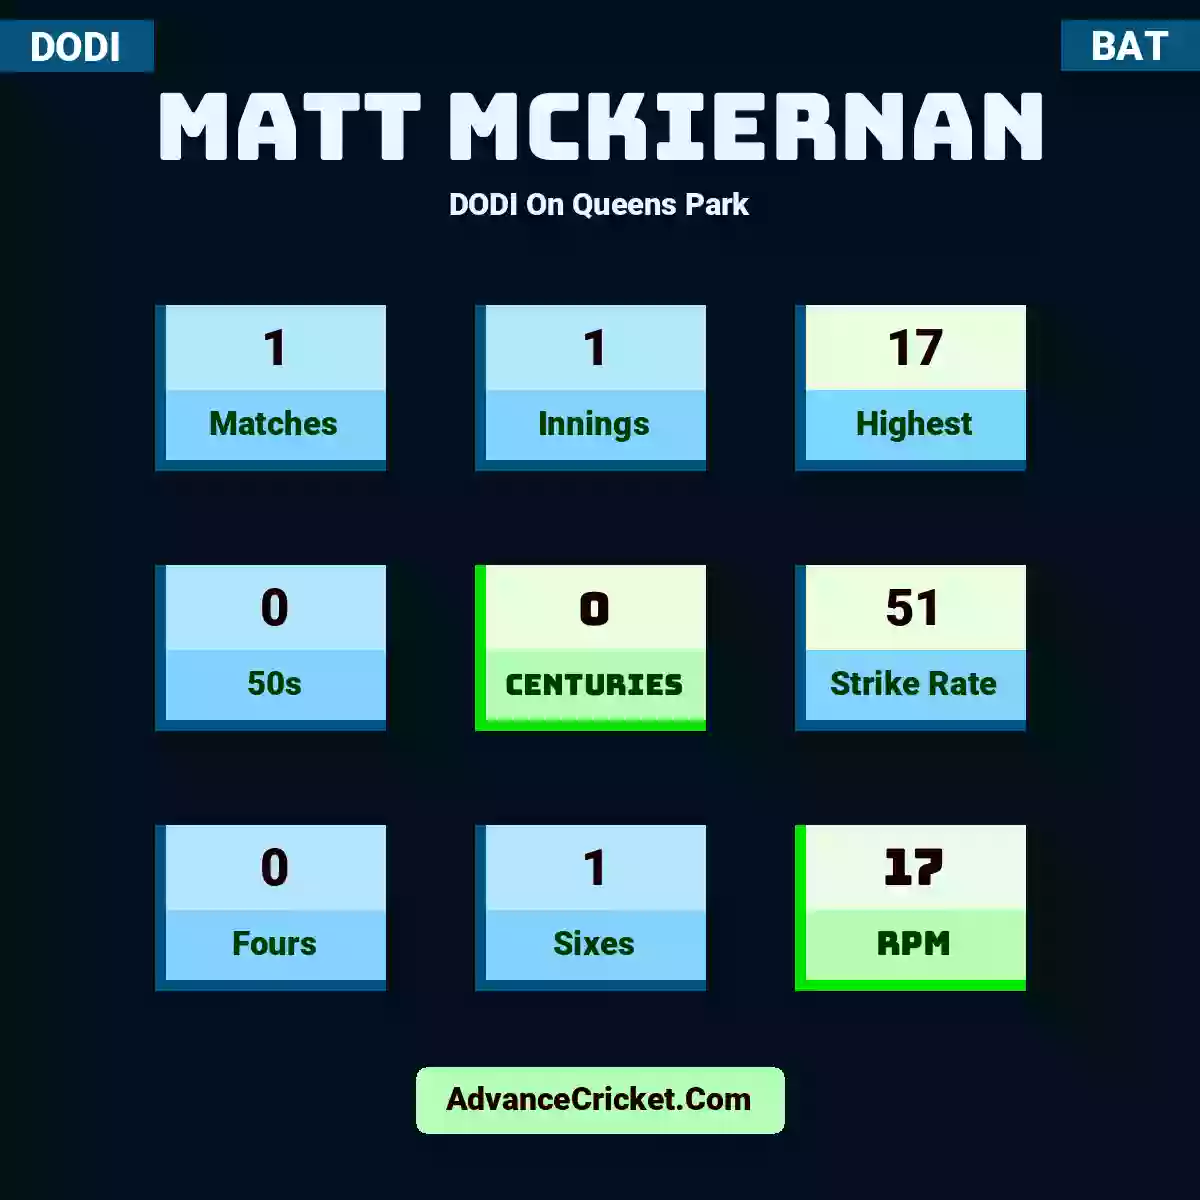 Matt McKiernan DODI  On Queens Park, Matt McKiernan played 1 matches, scored 17 runs as highest, 0 half-centuries, and 0 centuries, with a strike rate of 51. M.McKiernan hit 0 fours and 1 sixes, with an RPM of 17.